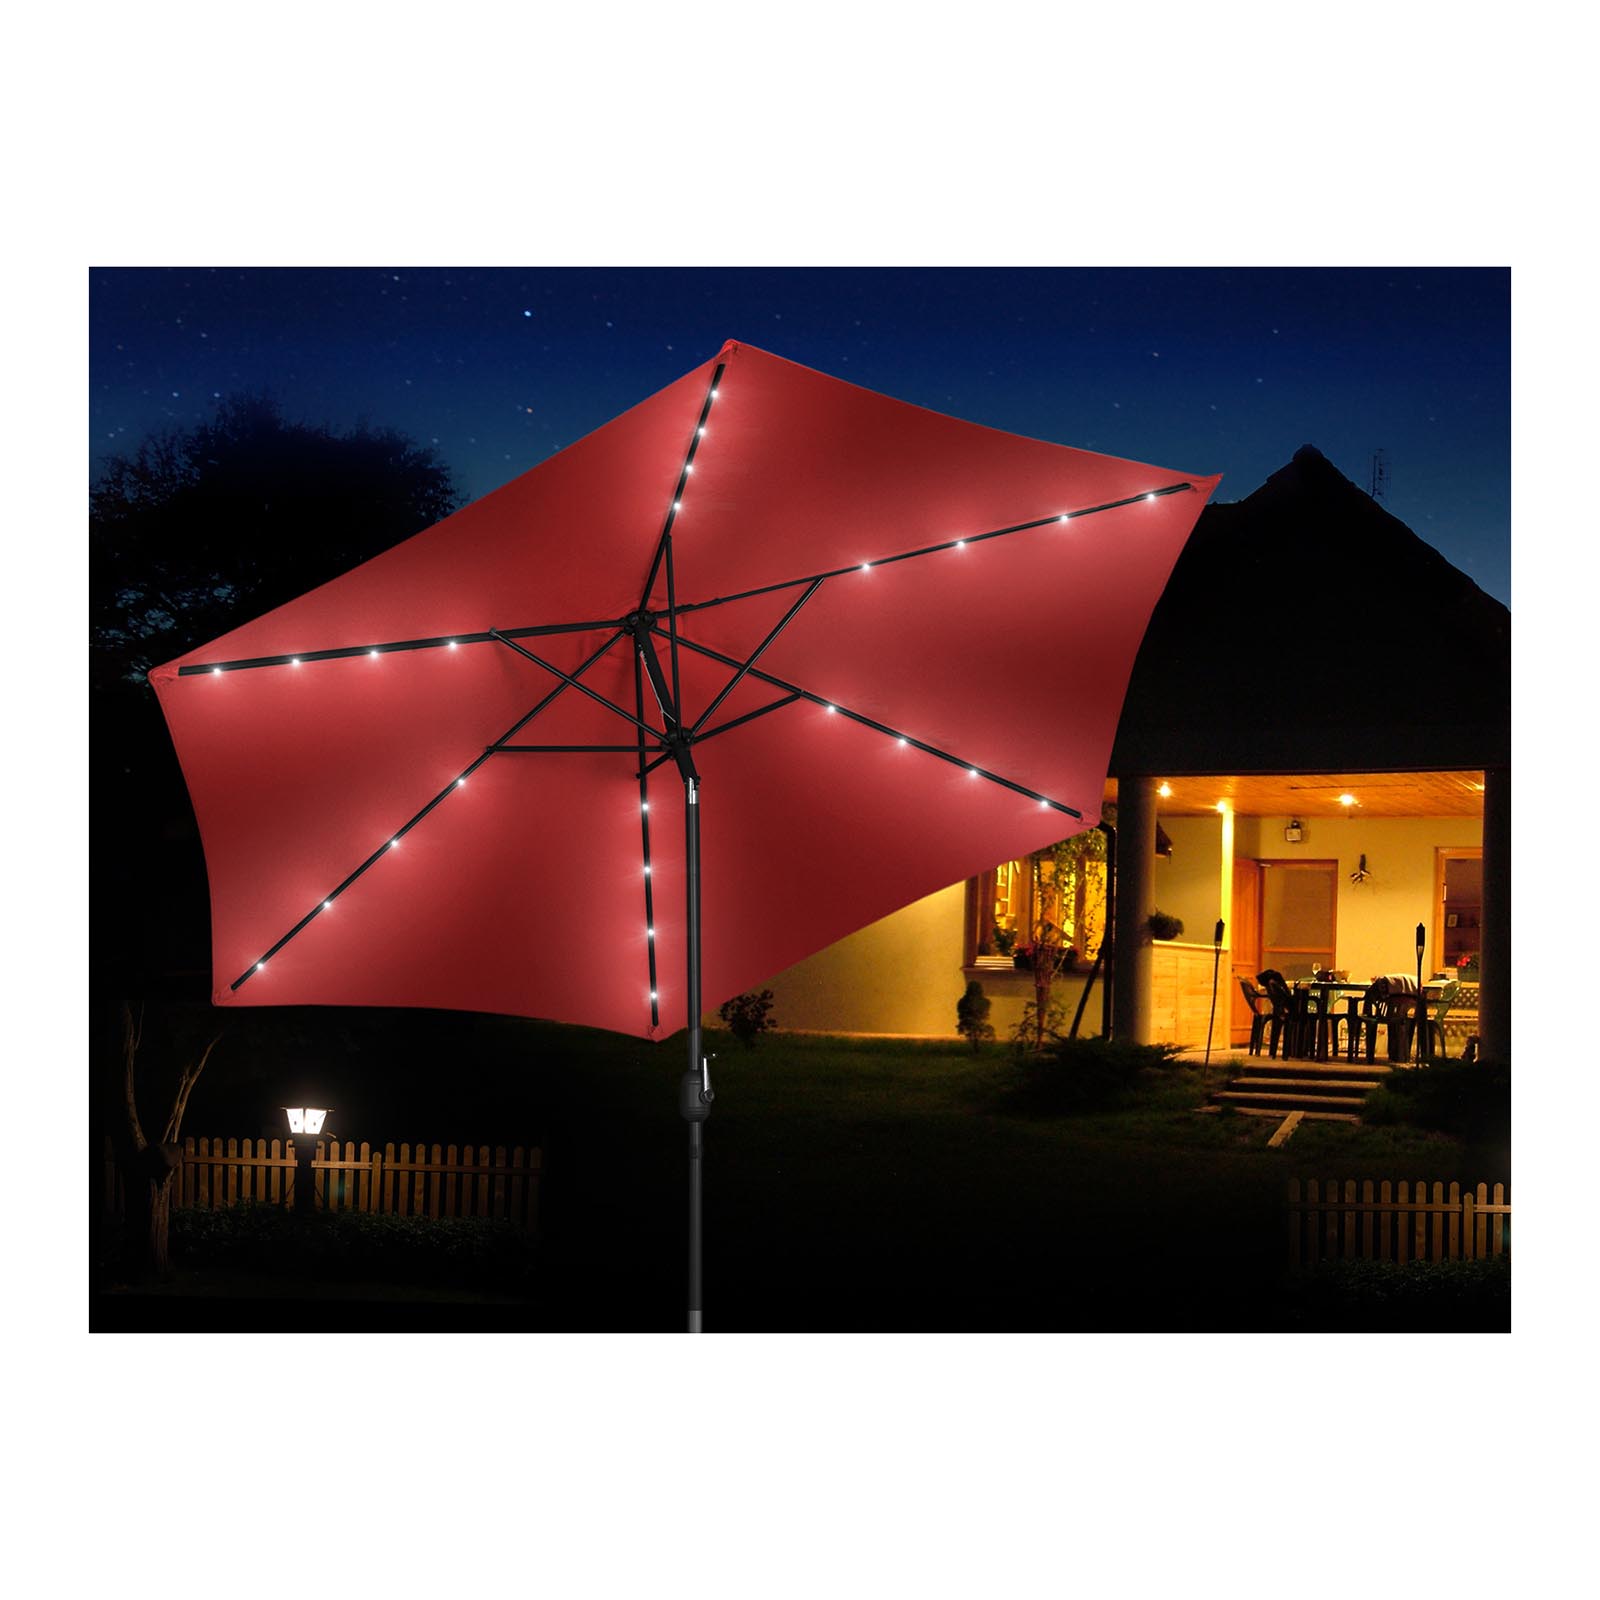 Parasol ogrodowy stojący - Ø300 cm - czerwony - LED